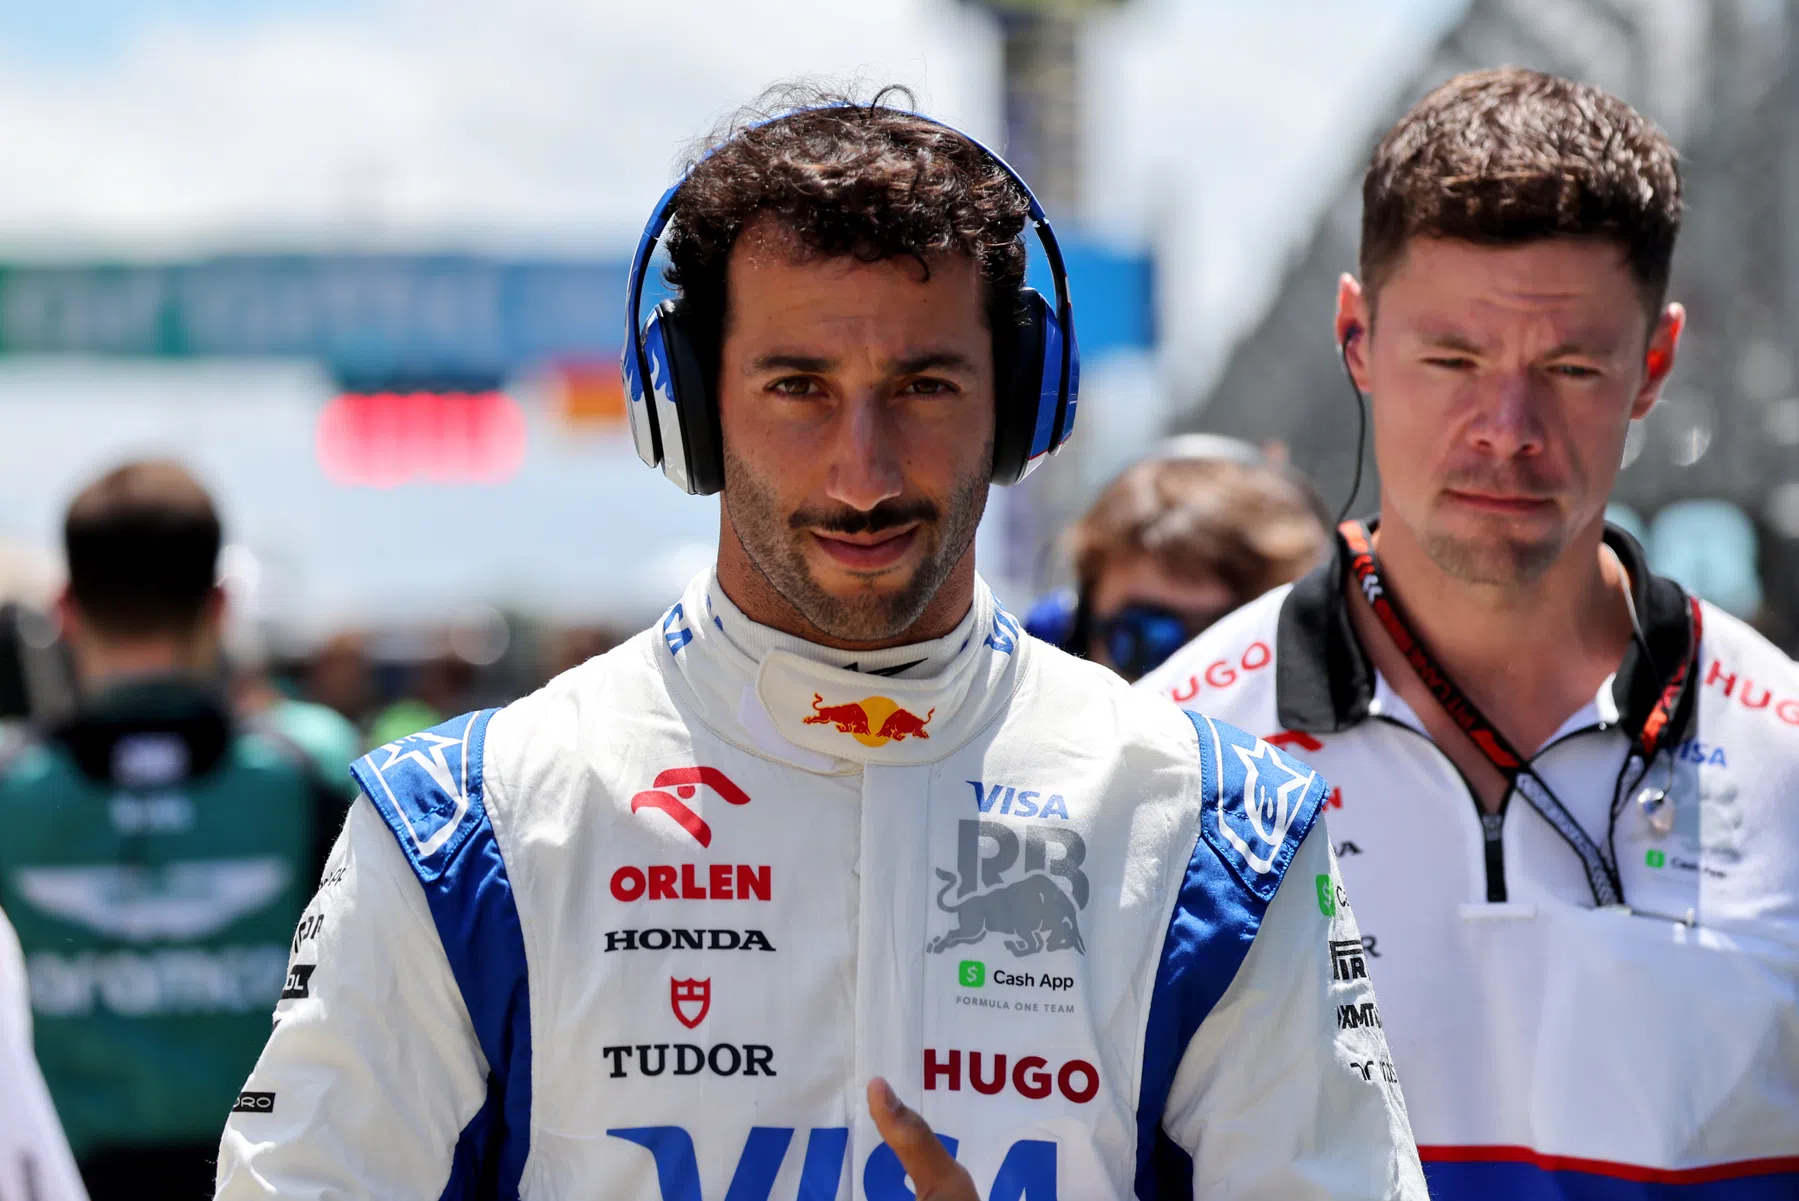 RB mantém a calma e não tem pressa para renovar o contrato de Ricciardo